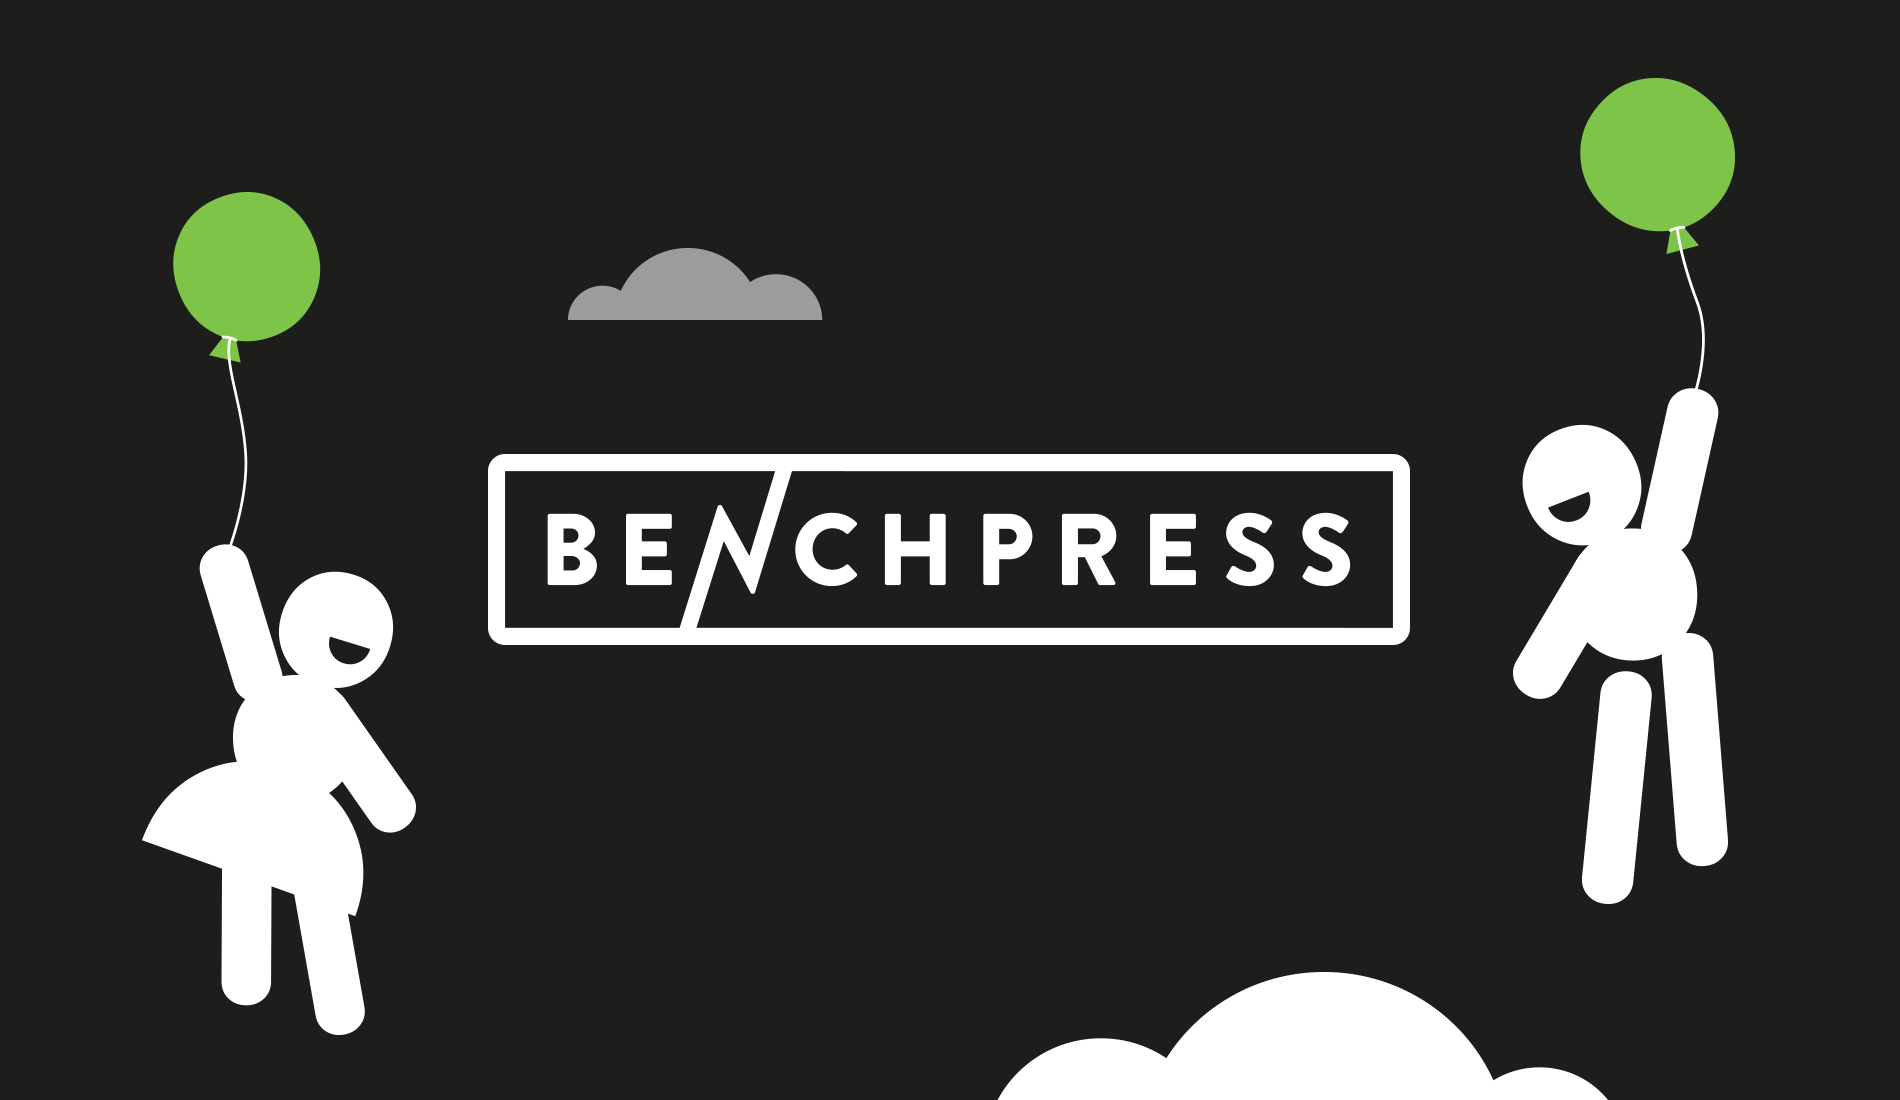 BenchPress Agency Survey System by Fhoke